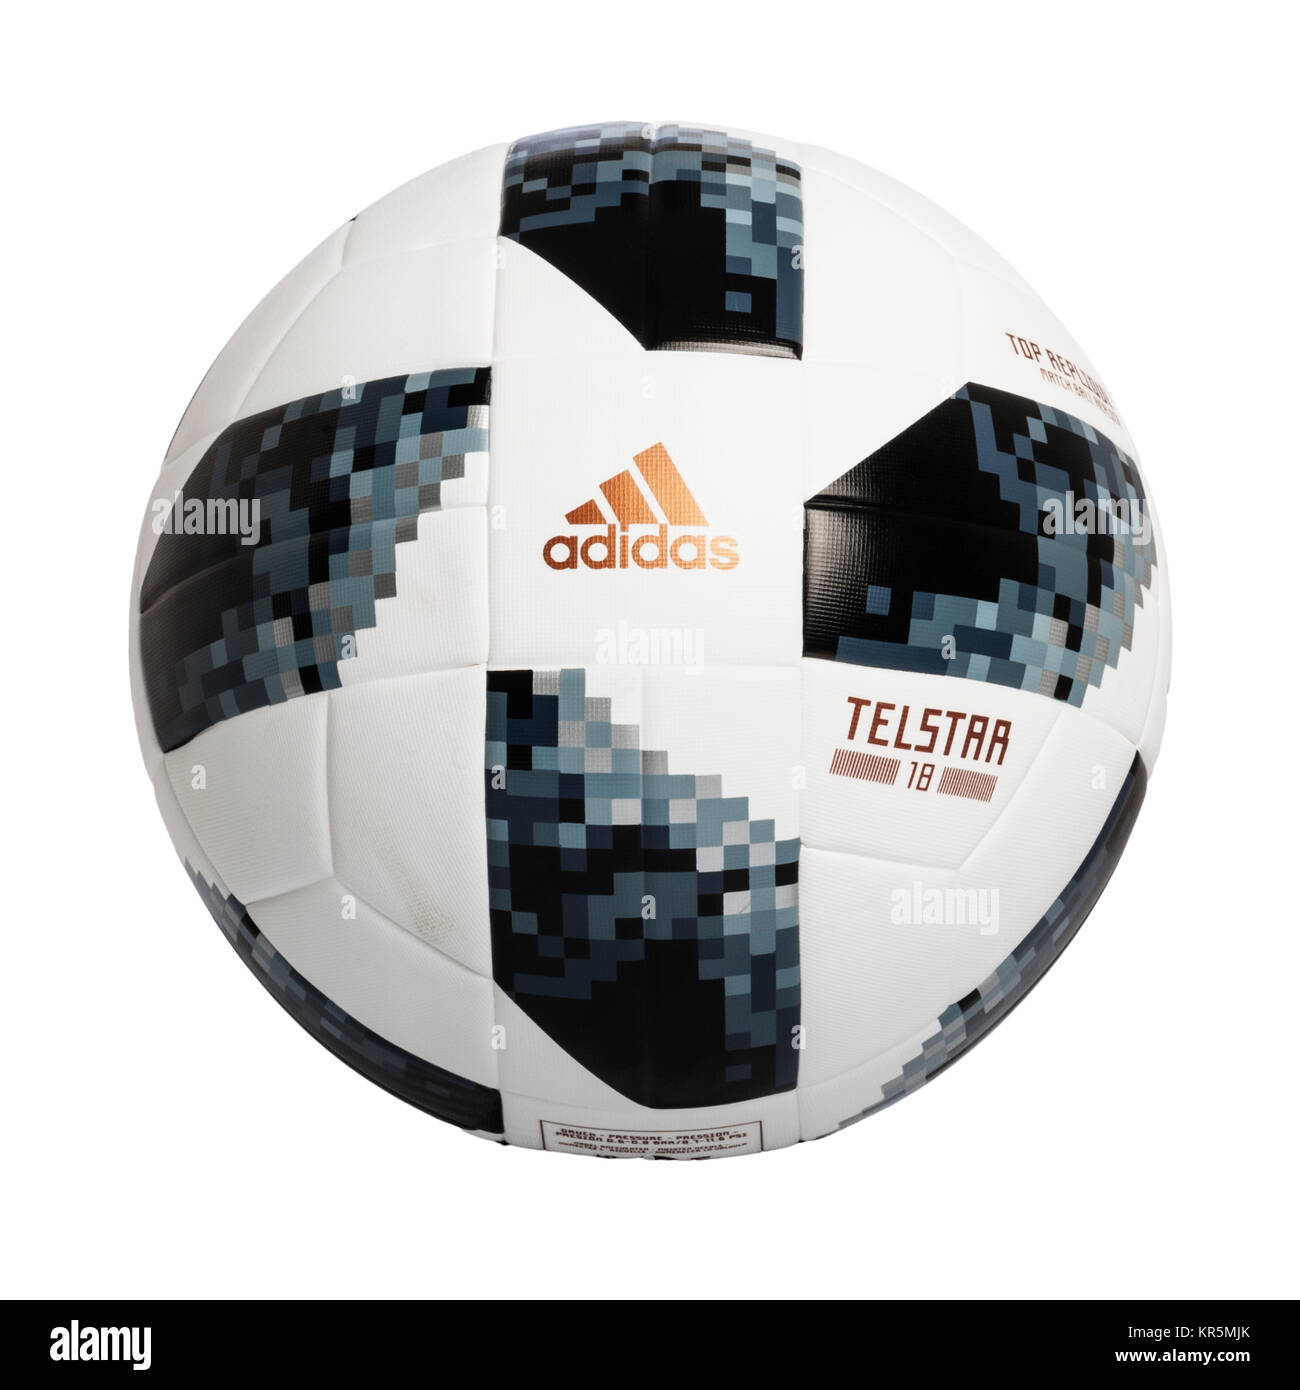 Die Adidas Telstar 2018 World Cup replica Fußball auf weißem Hintergrund Stockfoto